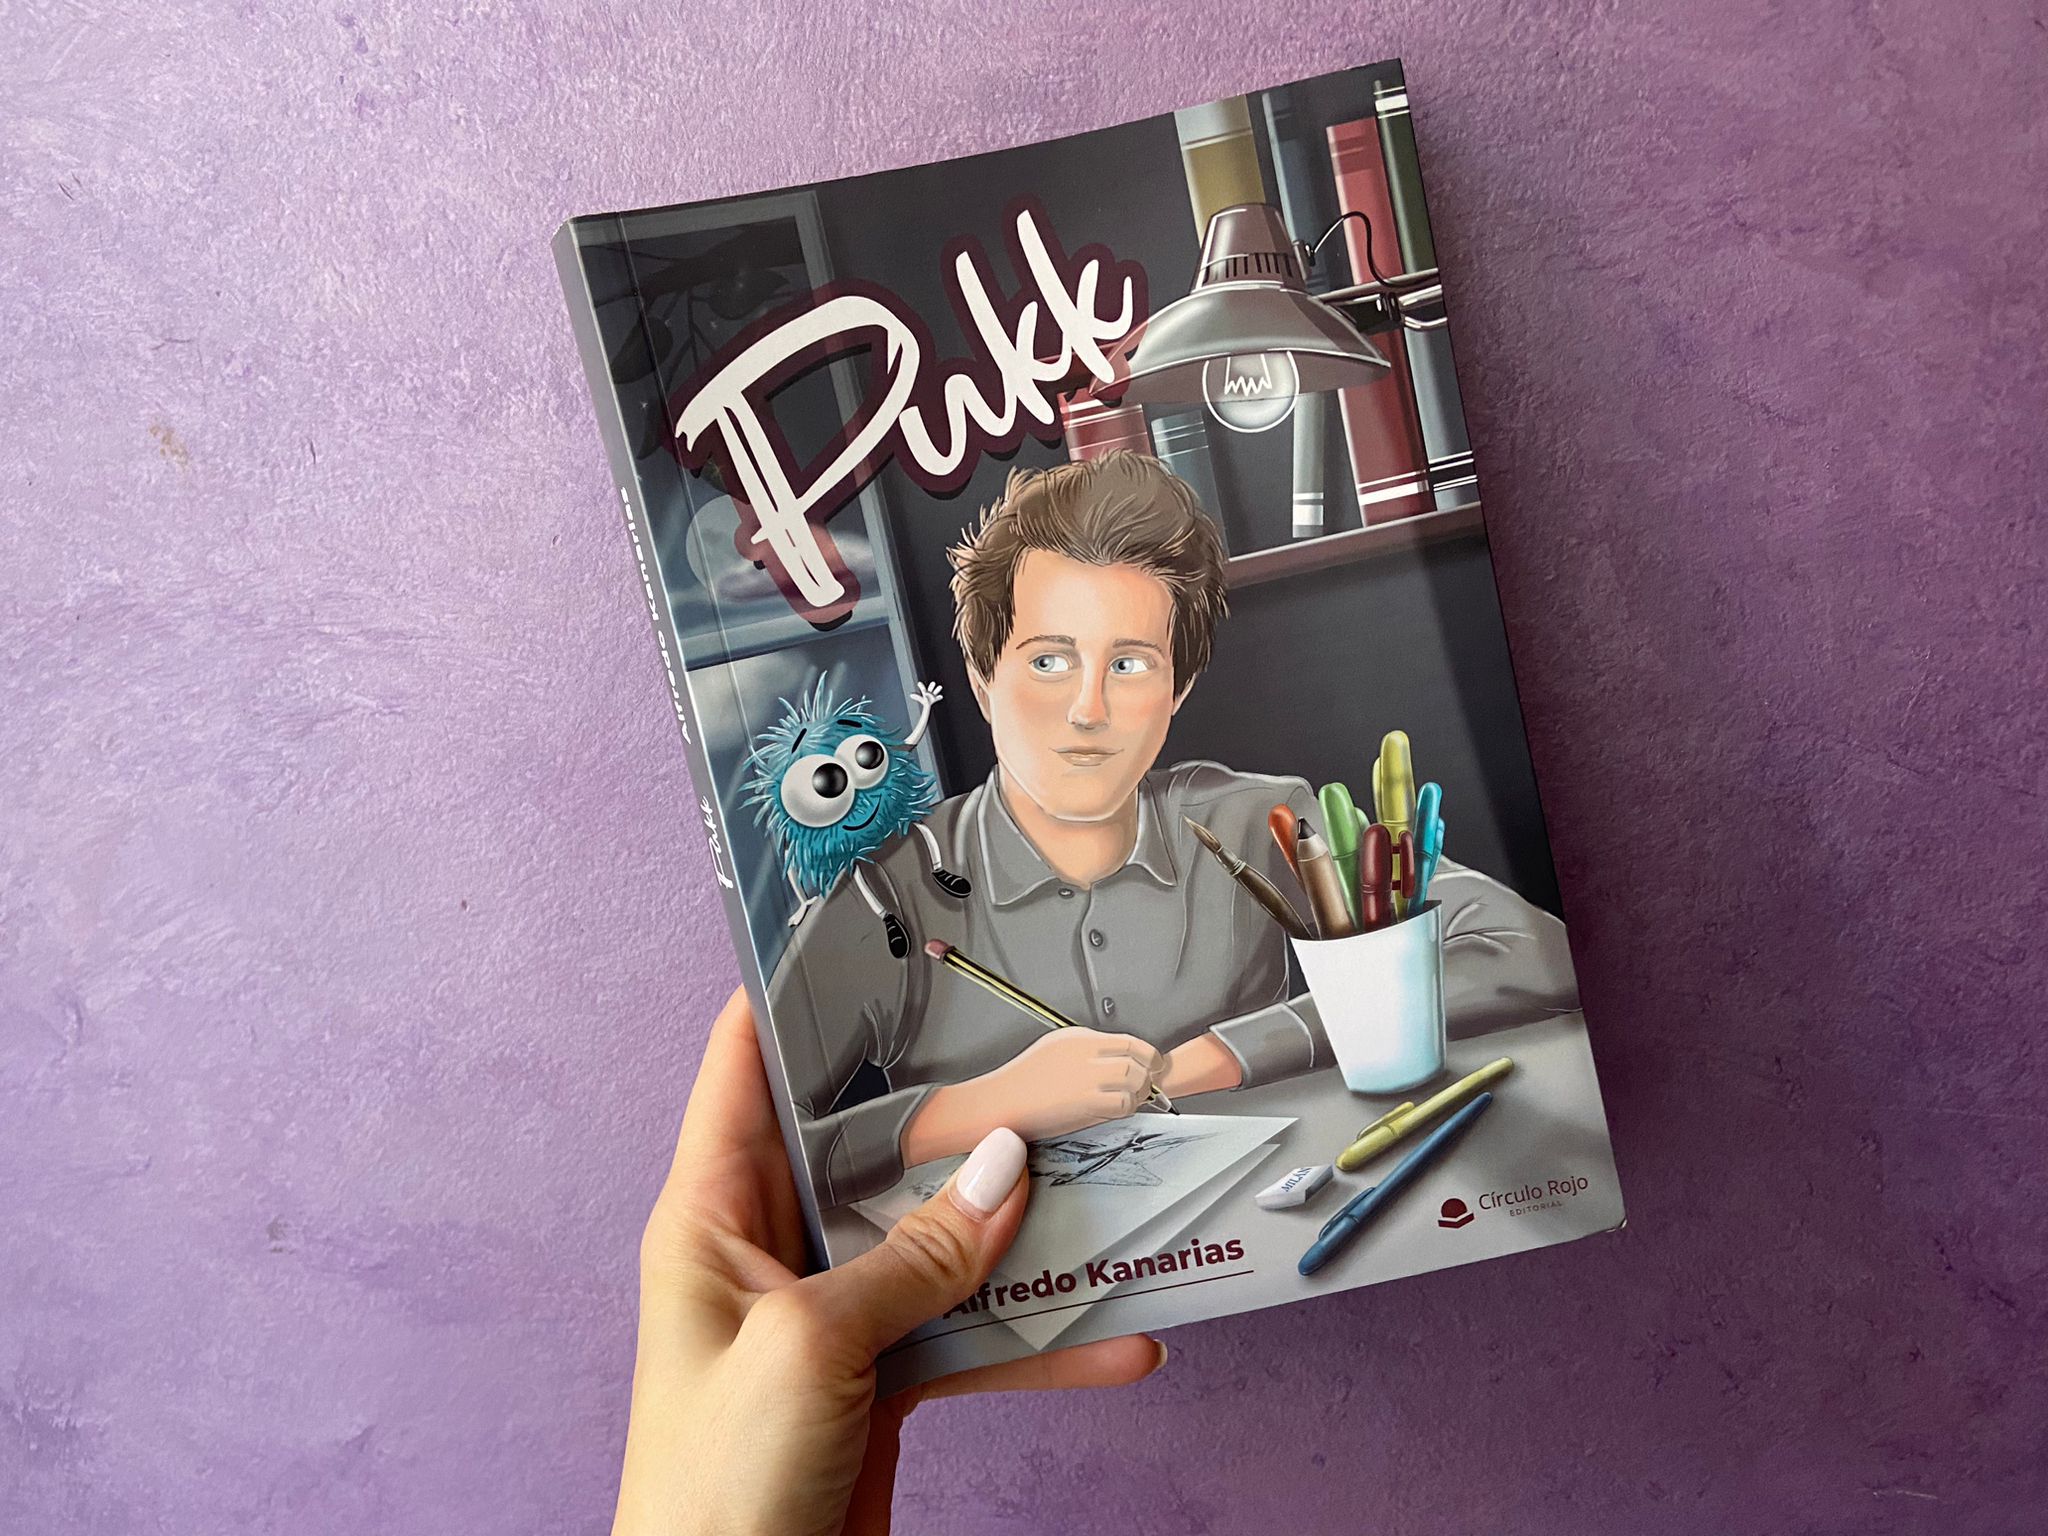 Reseña de “Pukk”, de Alfredo Kanarias | Por Daniela González